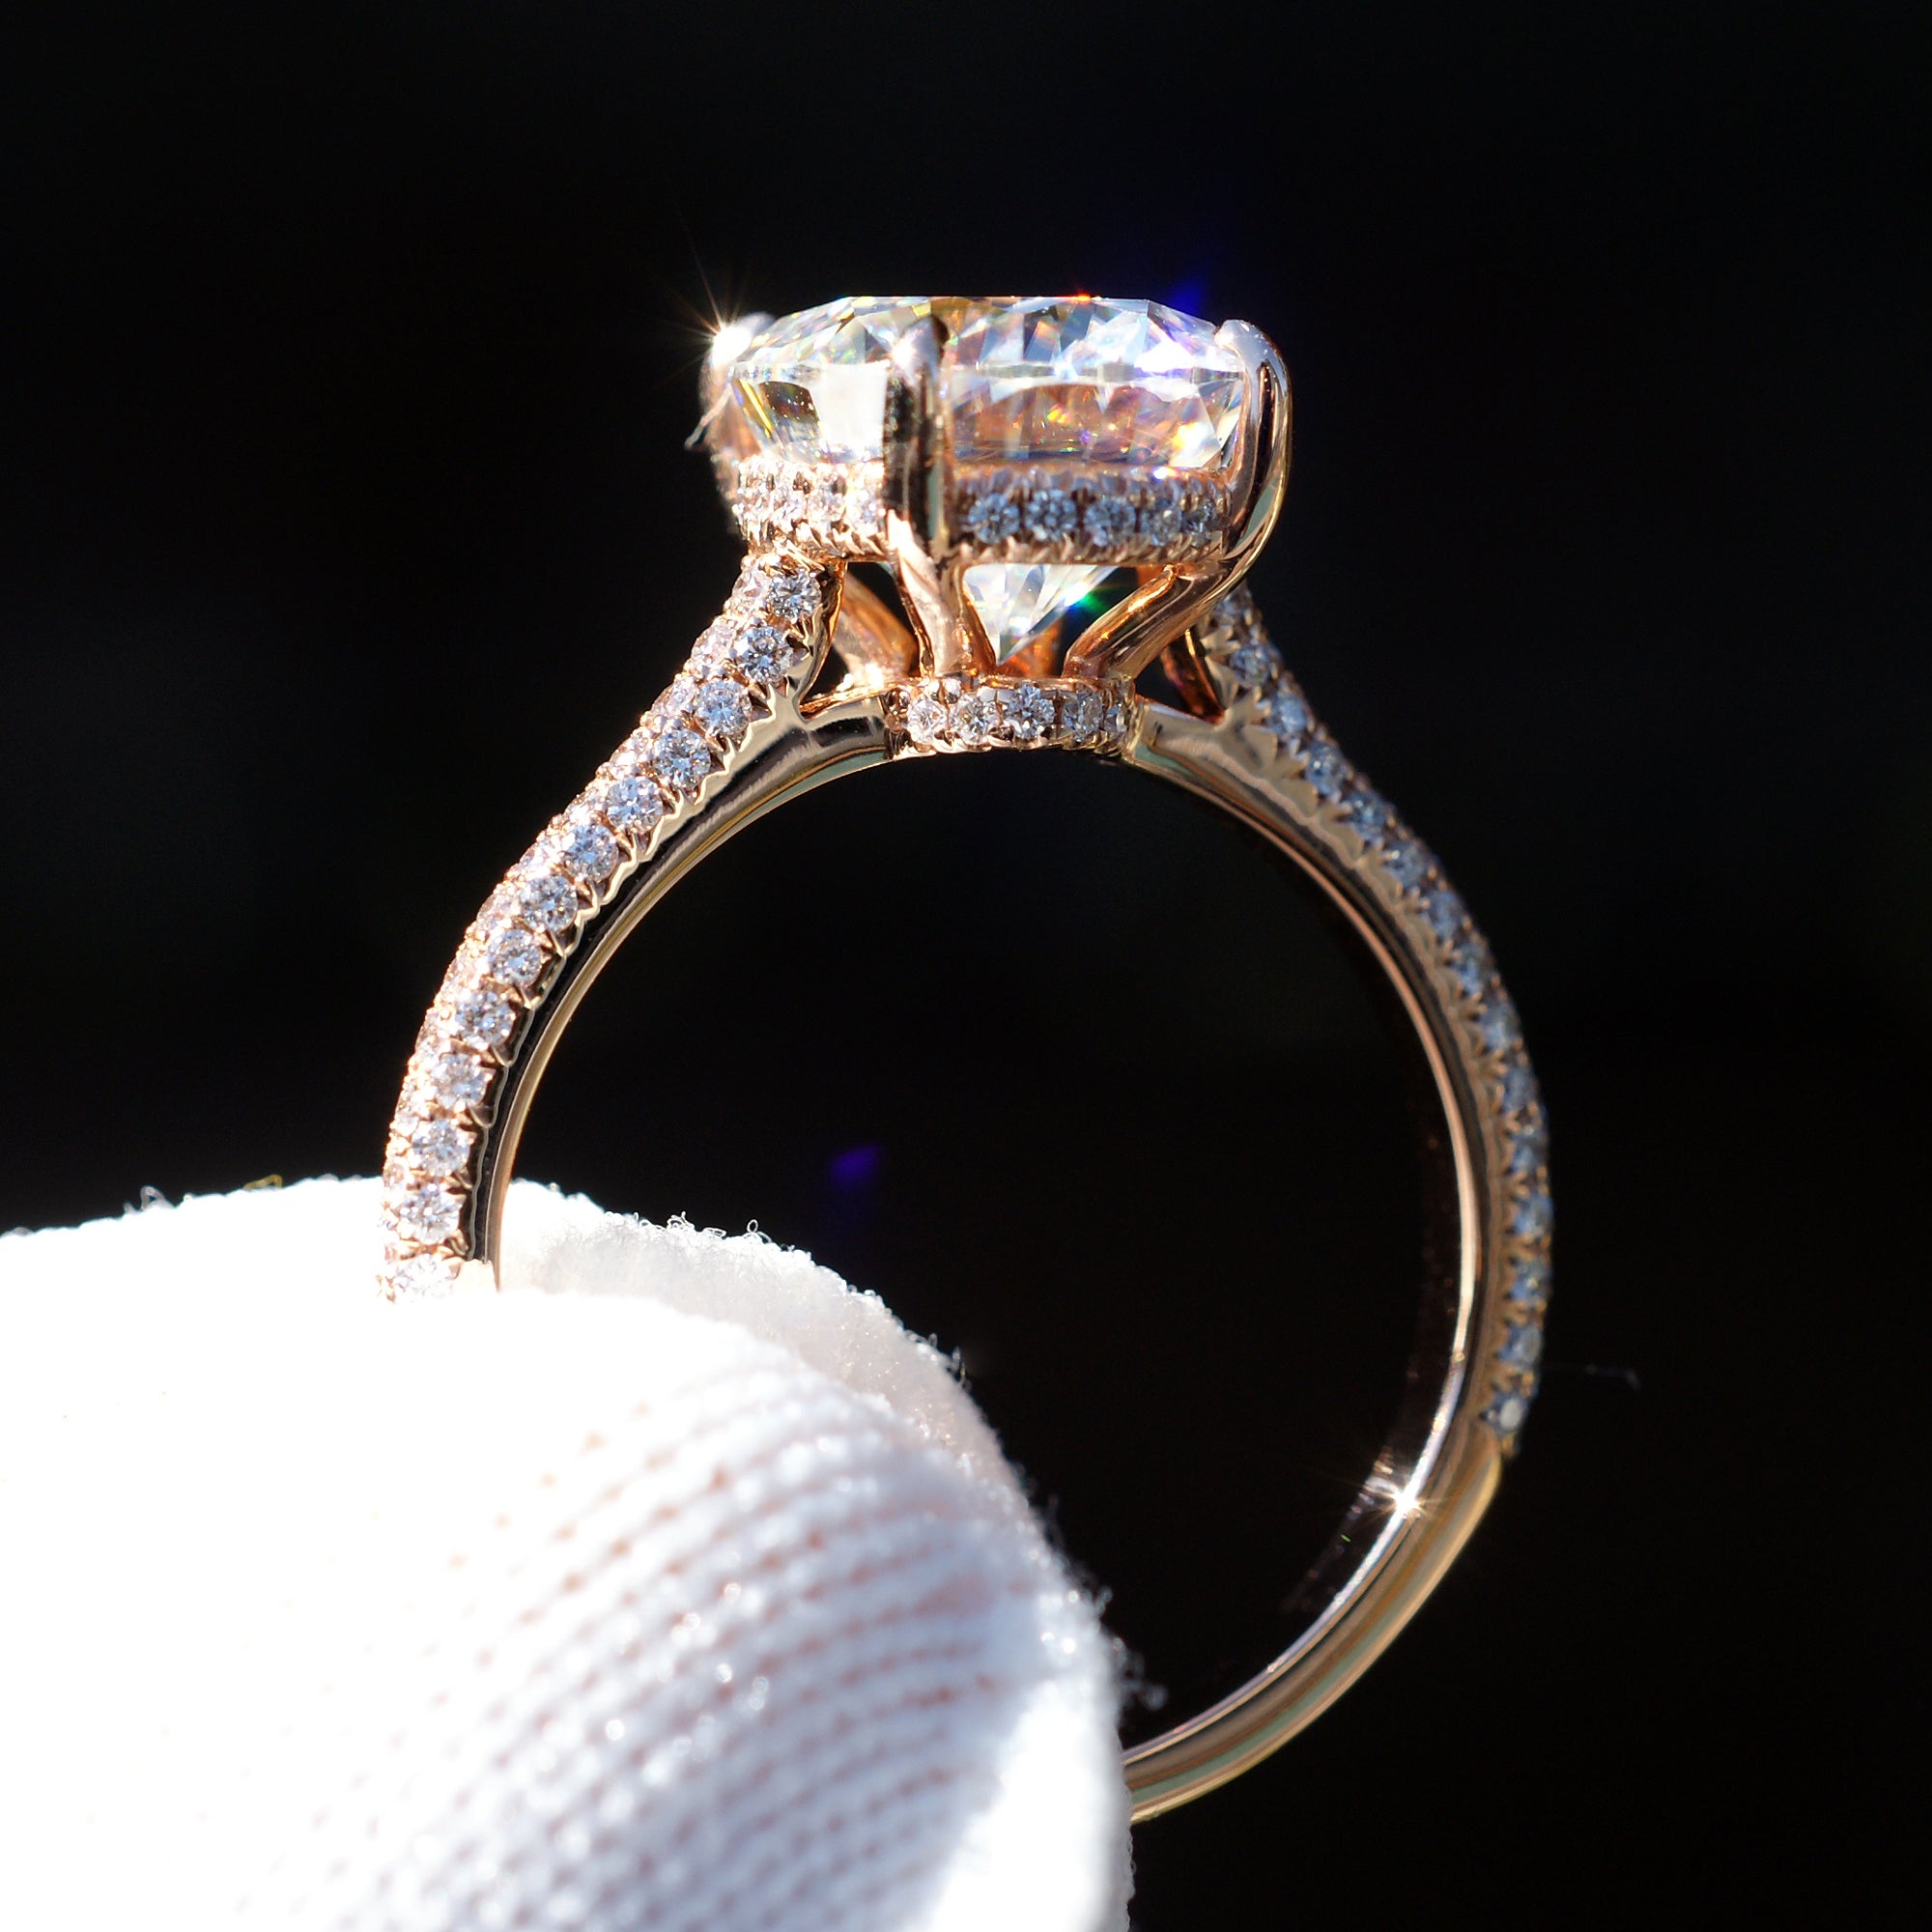 The Starlight oval moissanite ring like Blake Lively in rose gold